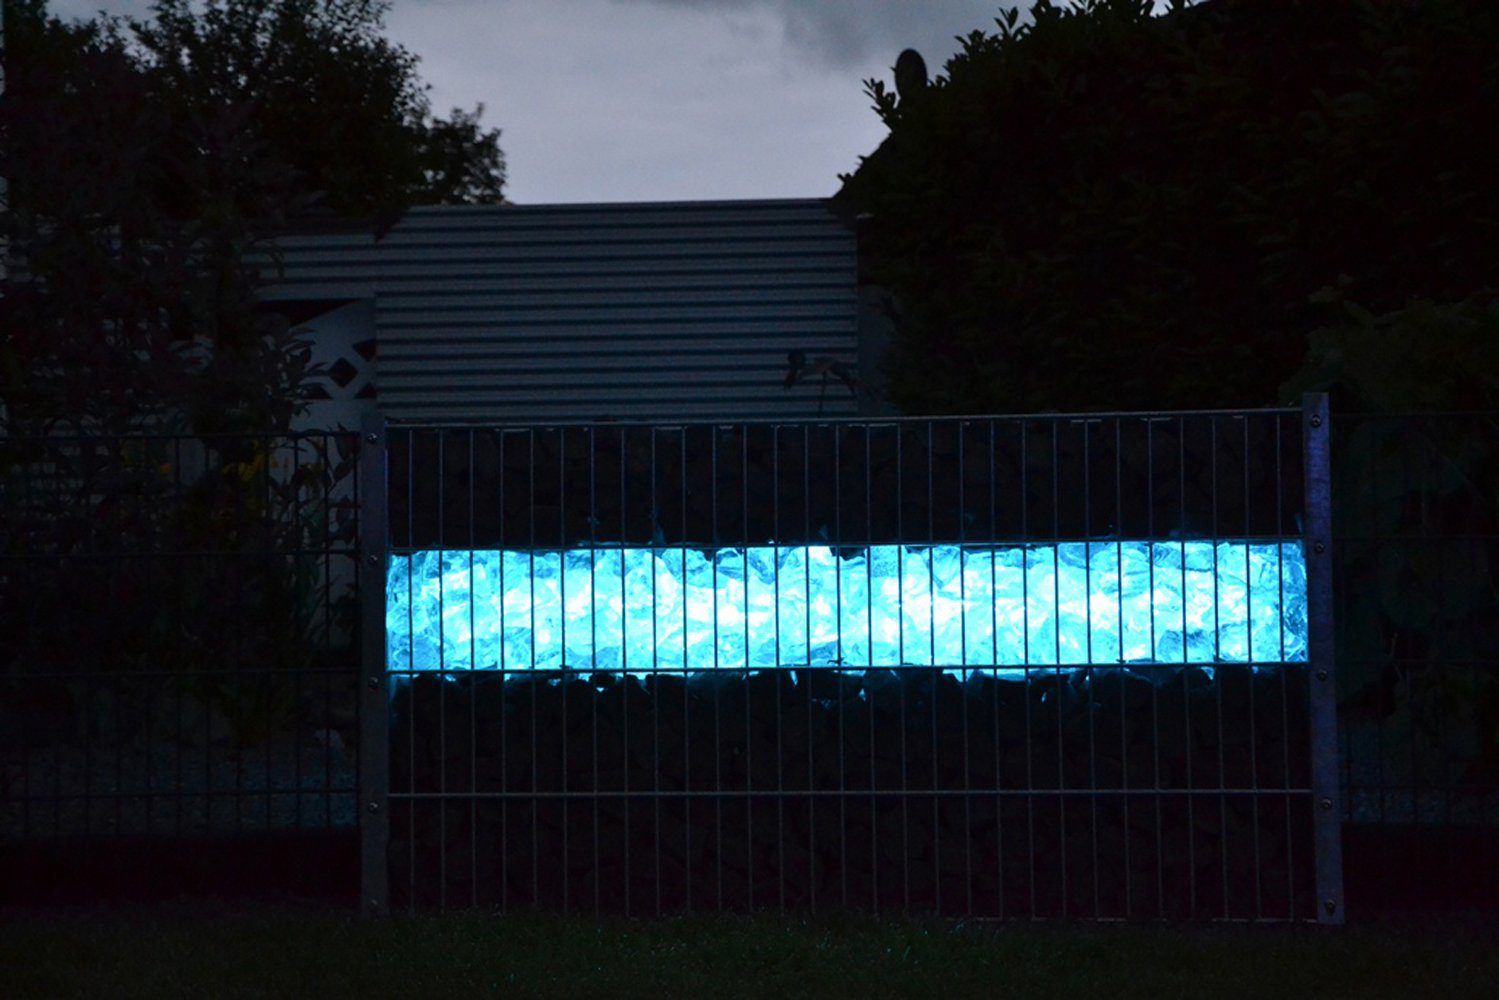 153cm Röhr LED T8, mit 1634 Außen-Wandleuchte LED Xenon XENON LED Röhre Blau, Gabionen Kunststoff-Röhre